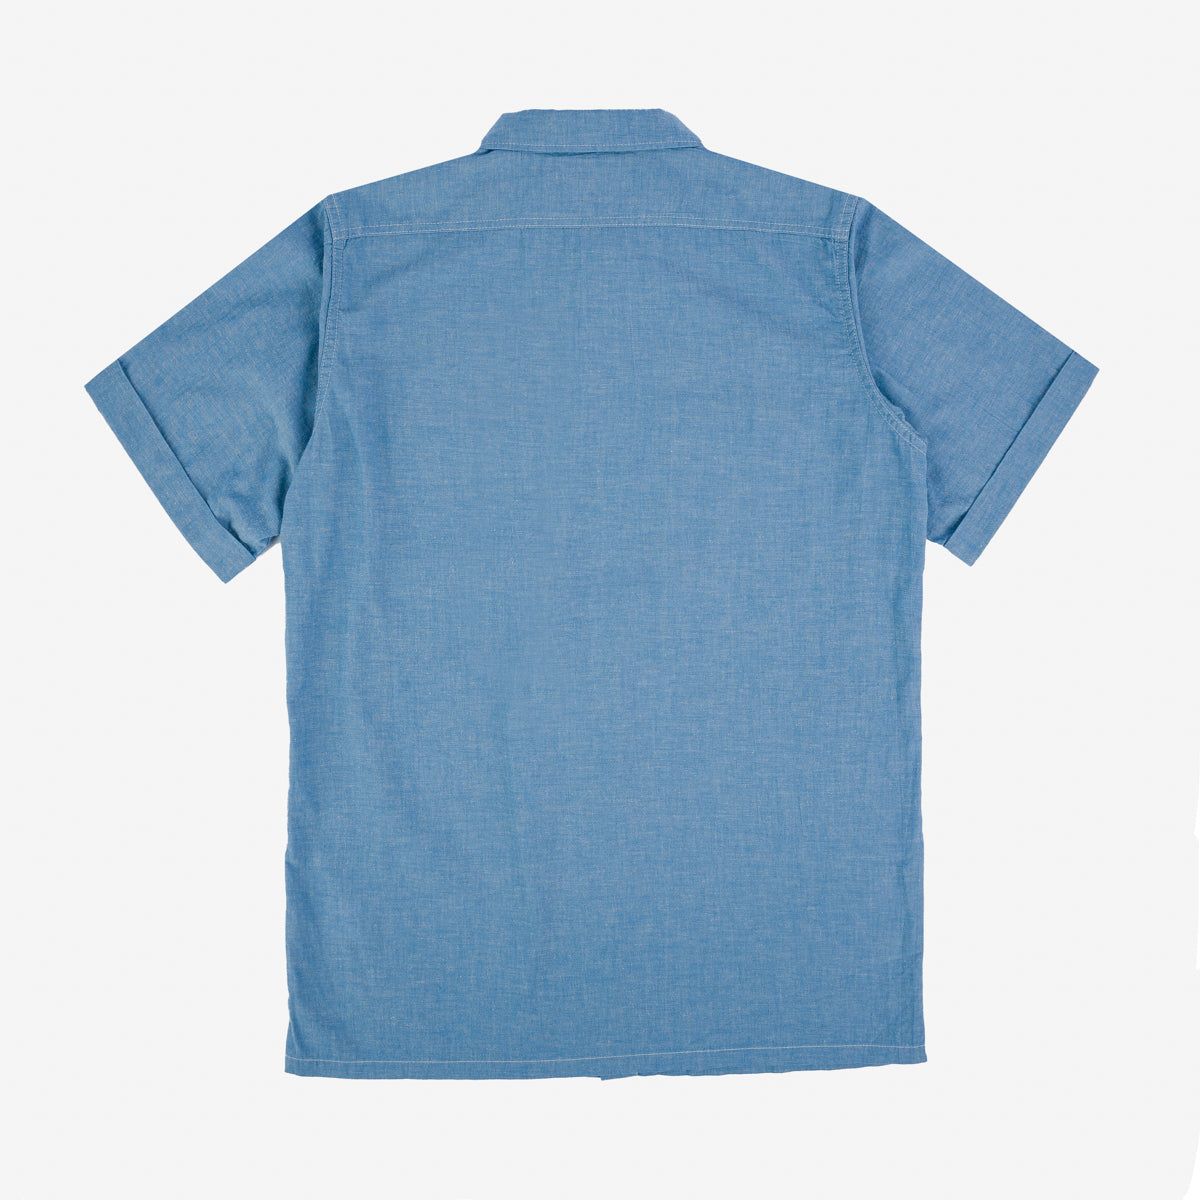 Iron Heart IHSH-388-BLU 4oz Selvedge Short Sleeved Summer Shirt - Blue